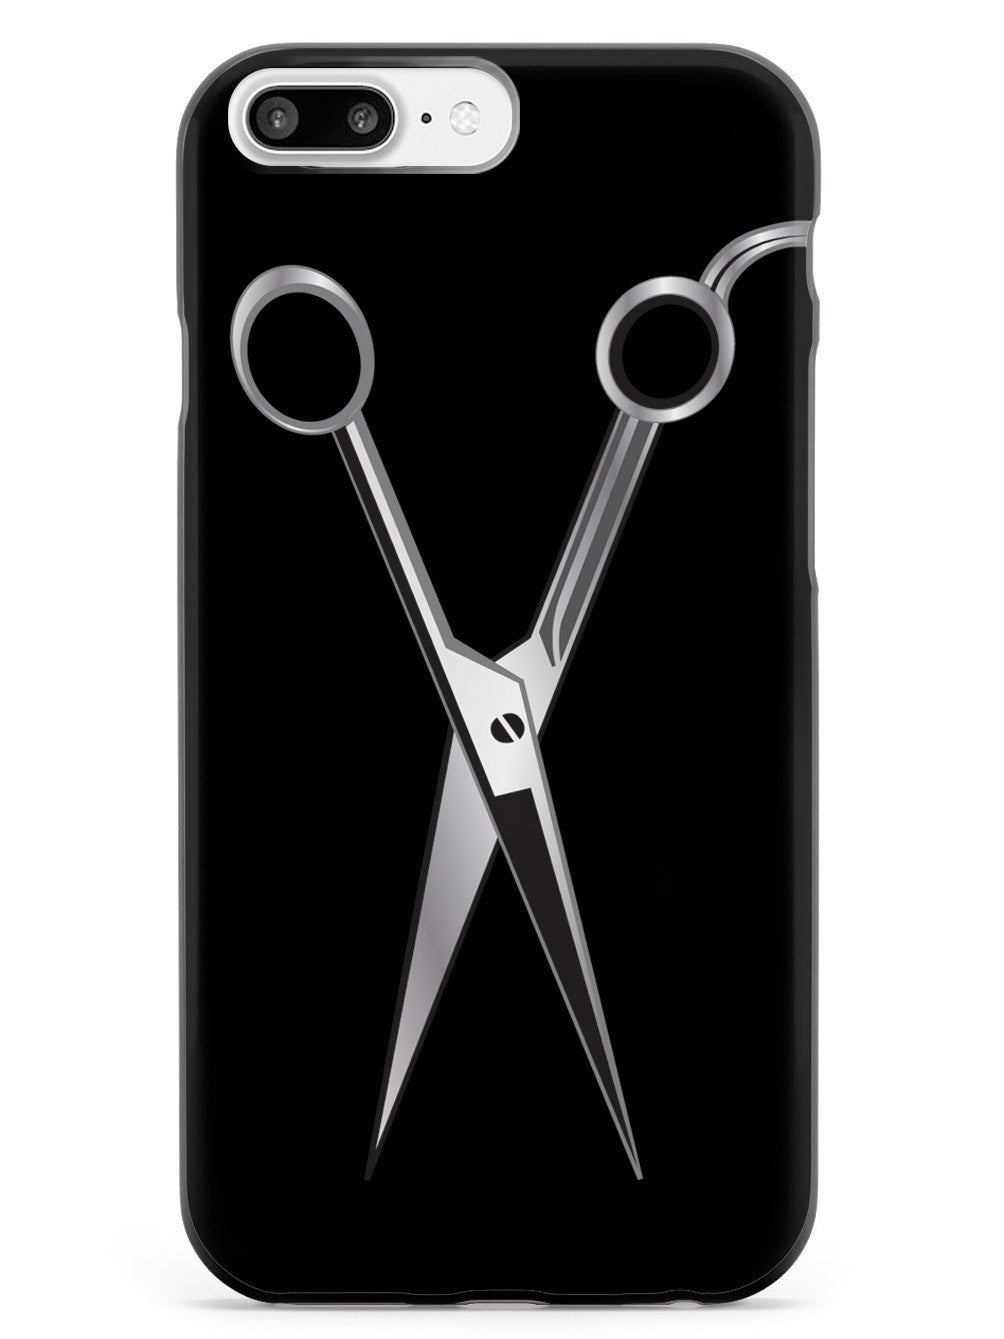 Hairstylist - Scissors Barber Hair Dresser  Case